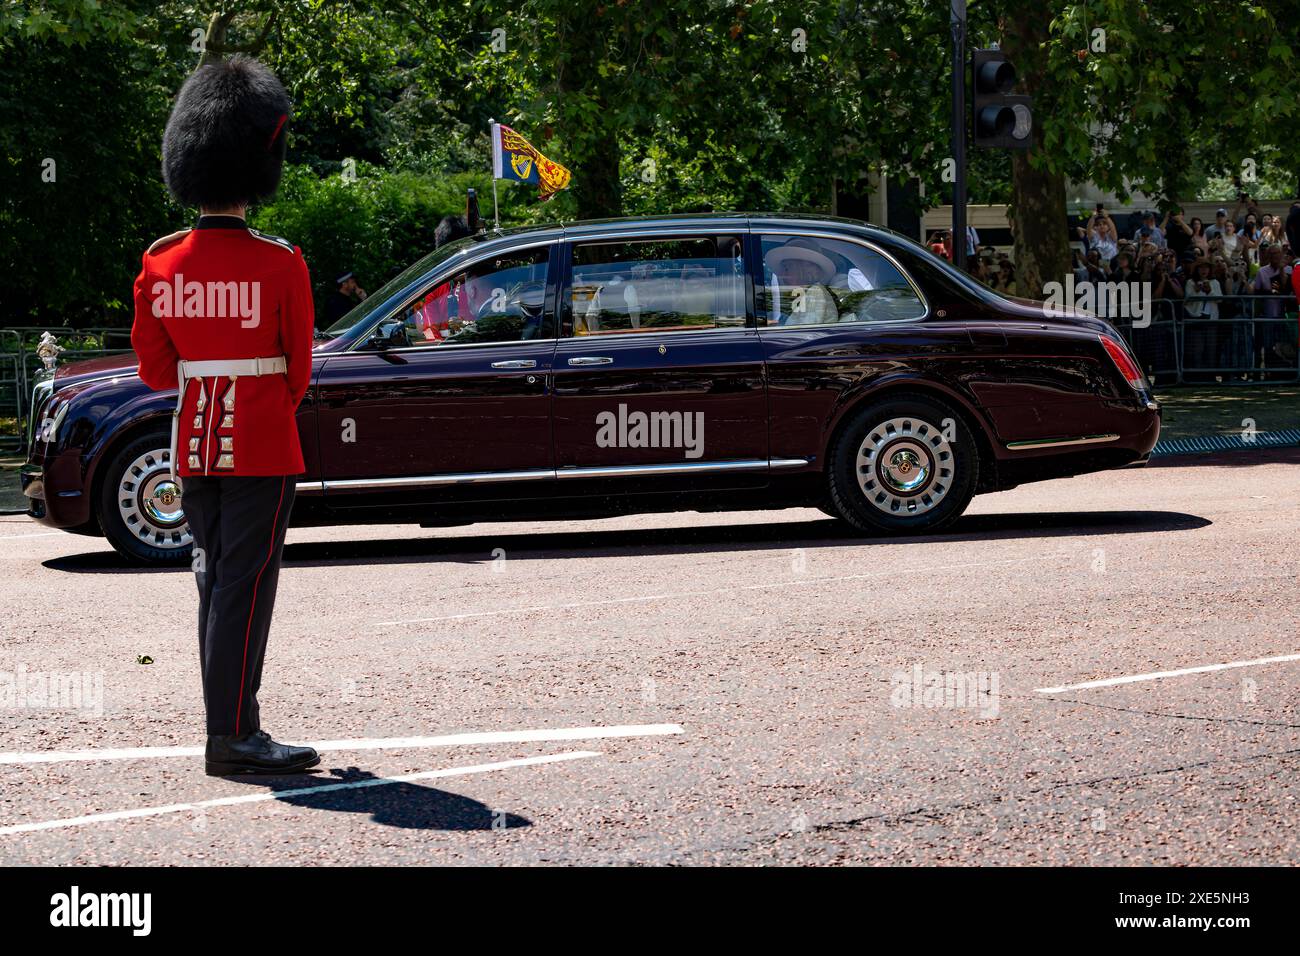 Mit dem Royal Car fahren König und Königin vom Buckingham Palace zur Pferdewachtparade für den Staatsbesuch des Kaisers von Japan. Stockfoto